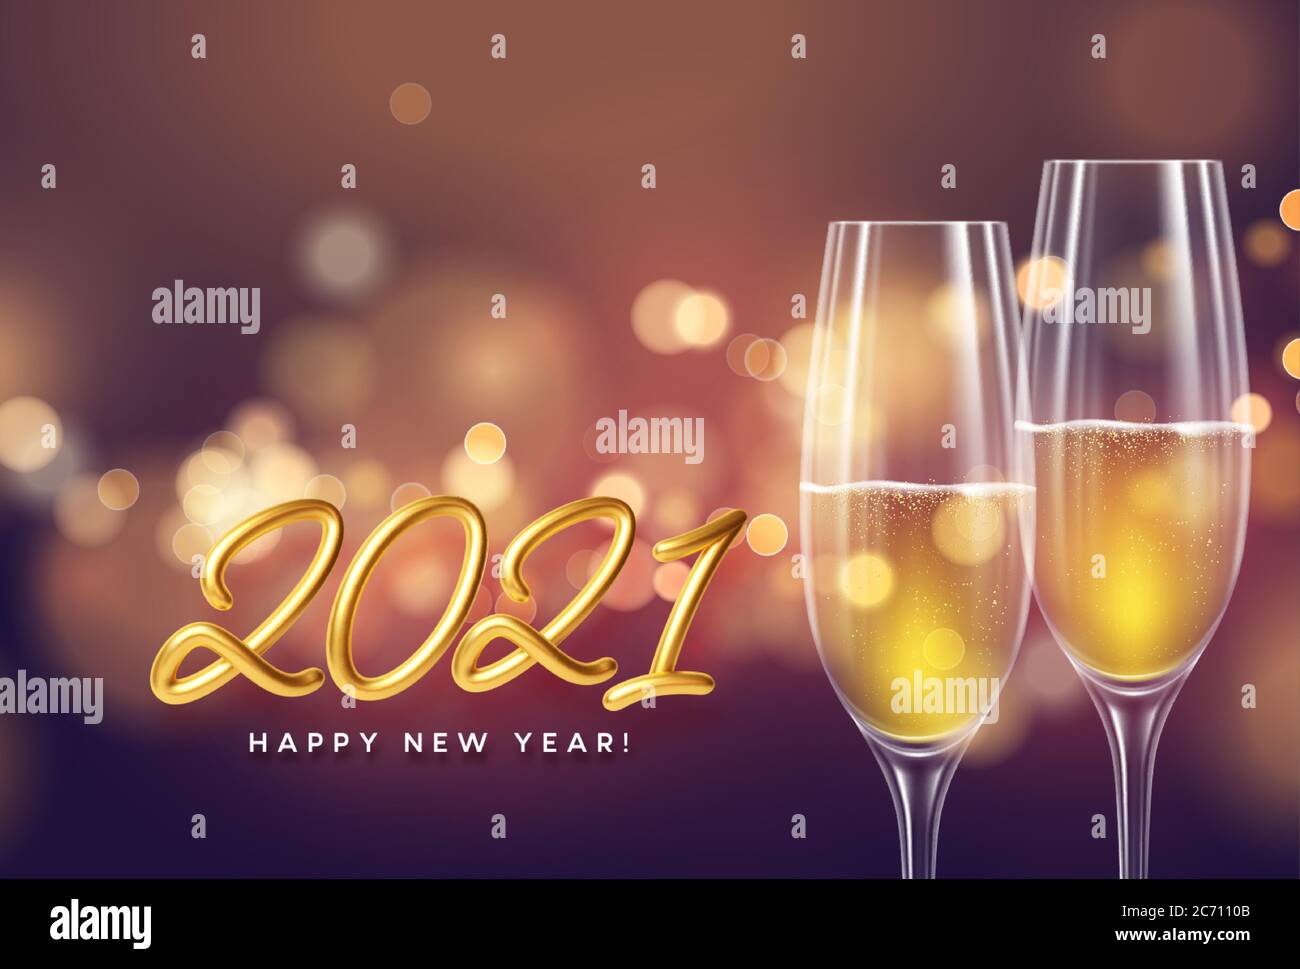 2021 fond doré du nouvel an avec une bouteille et des verres de champagne et une lumière de bokeh éclatante. Illustration vectorielle Illustration de Vecteur